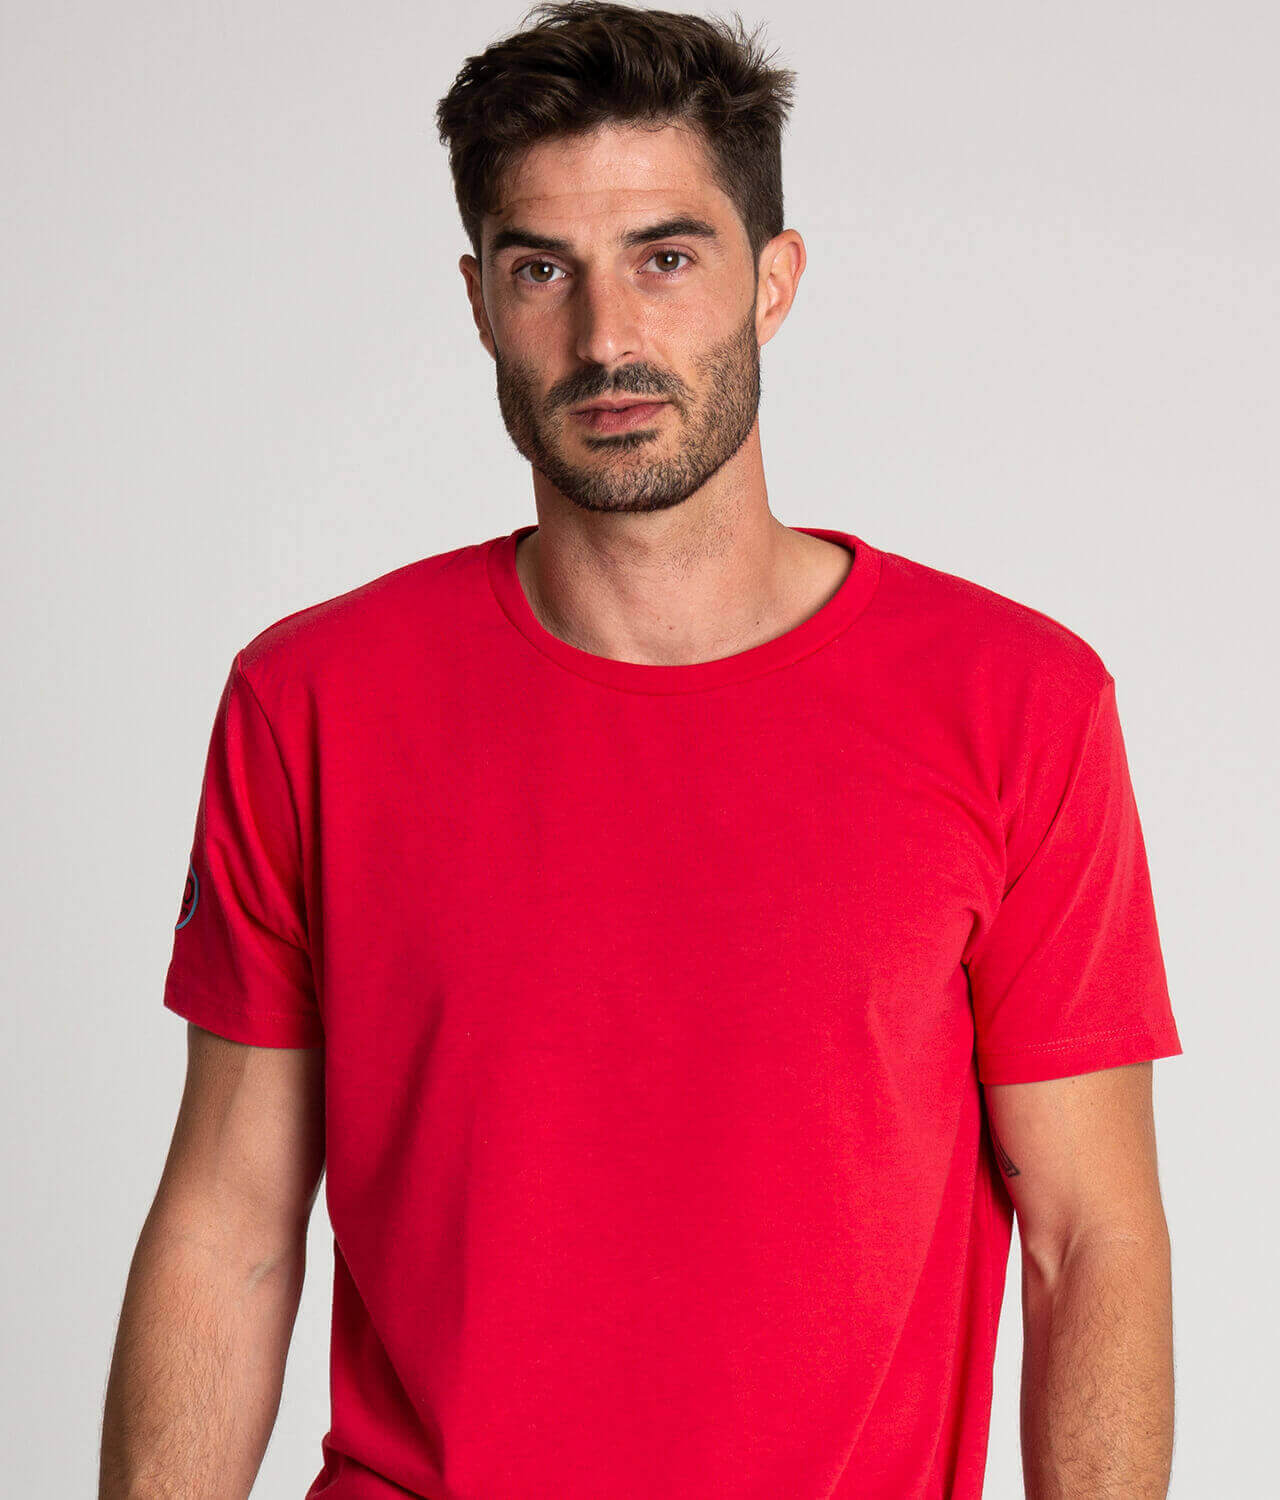 Camiseta algodón antimosquitos hombre rojo 1